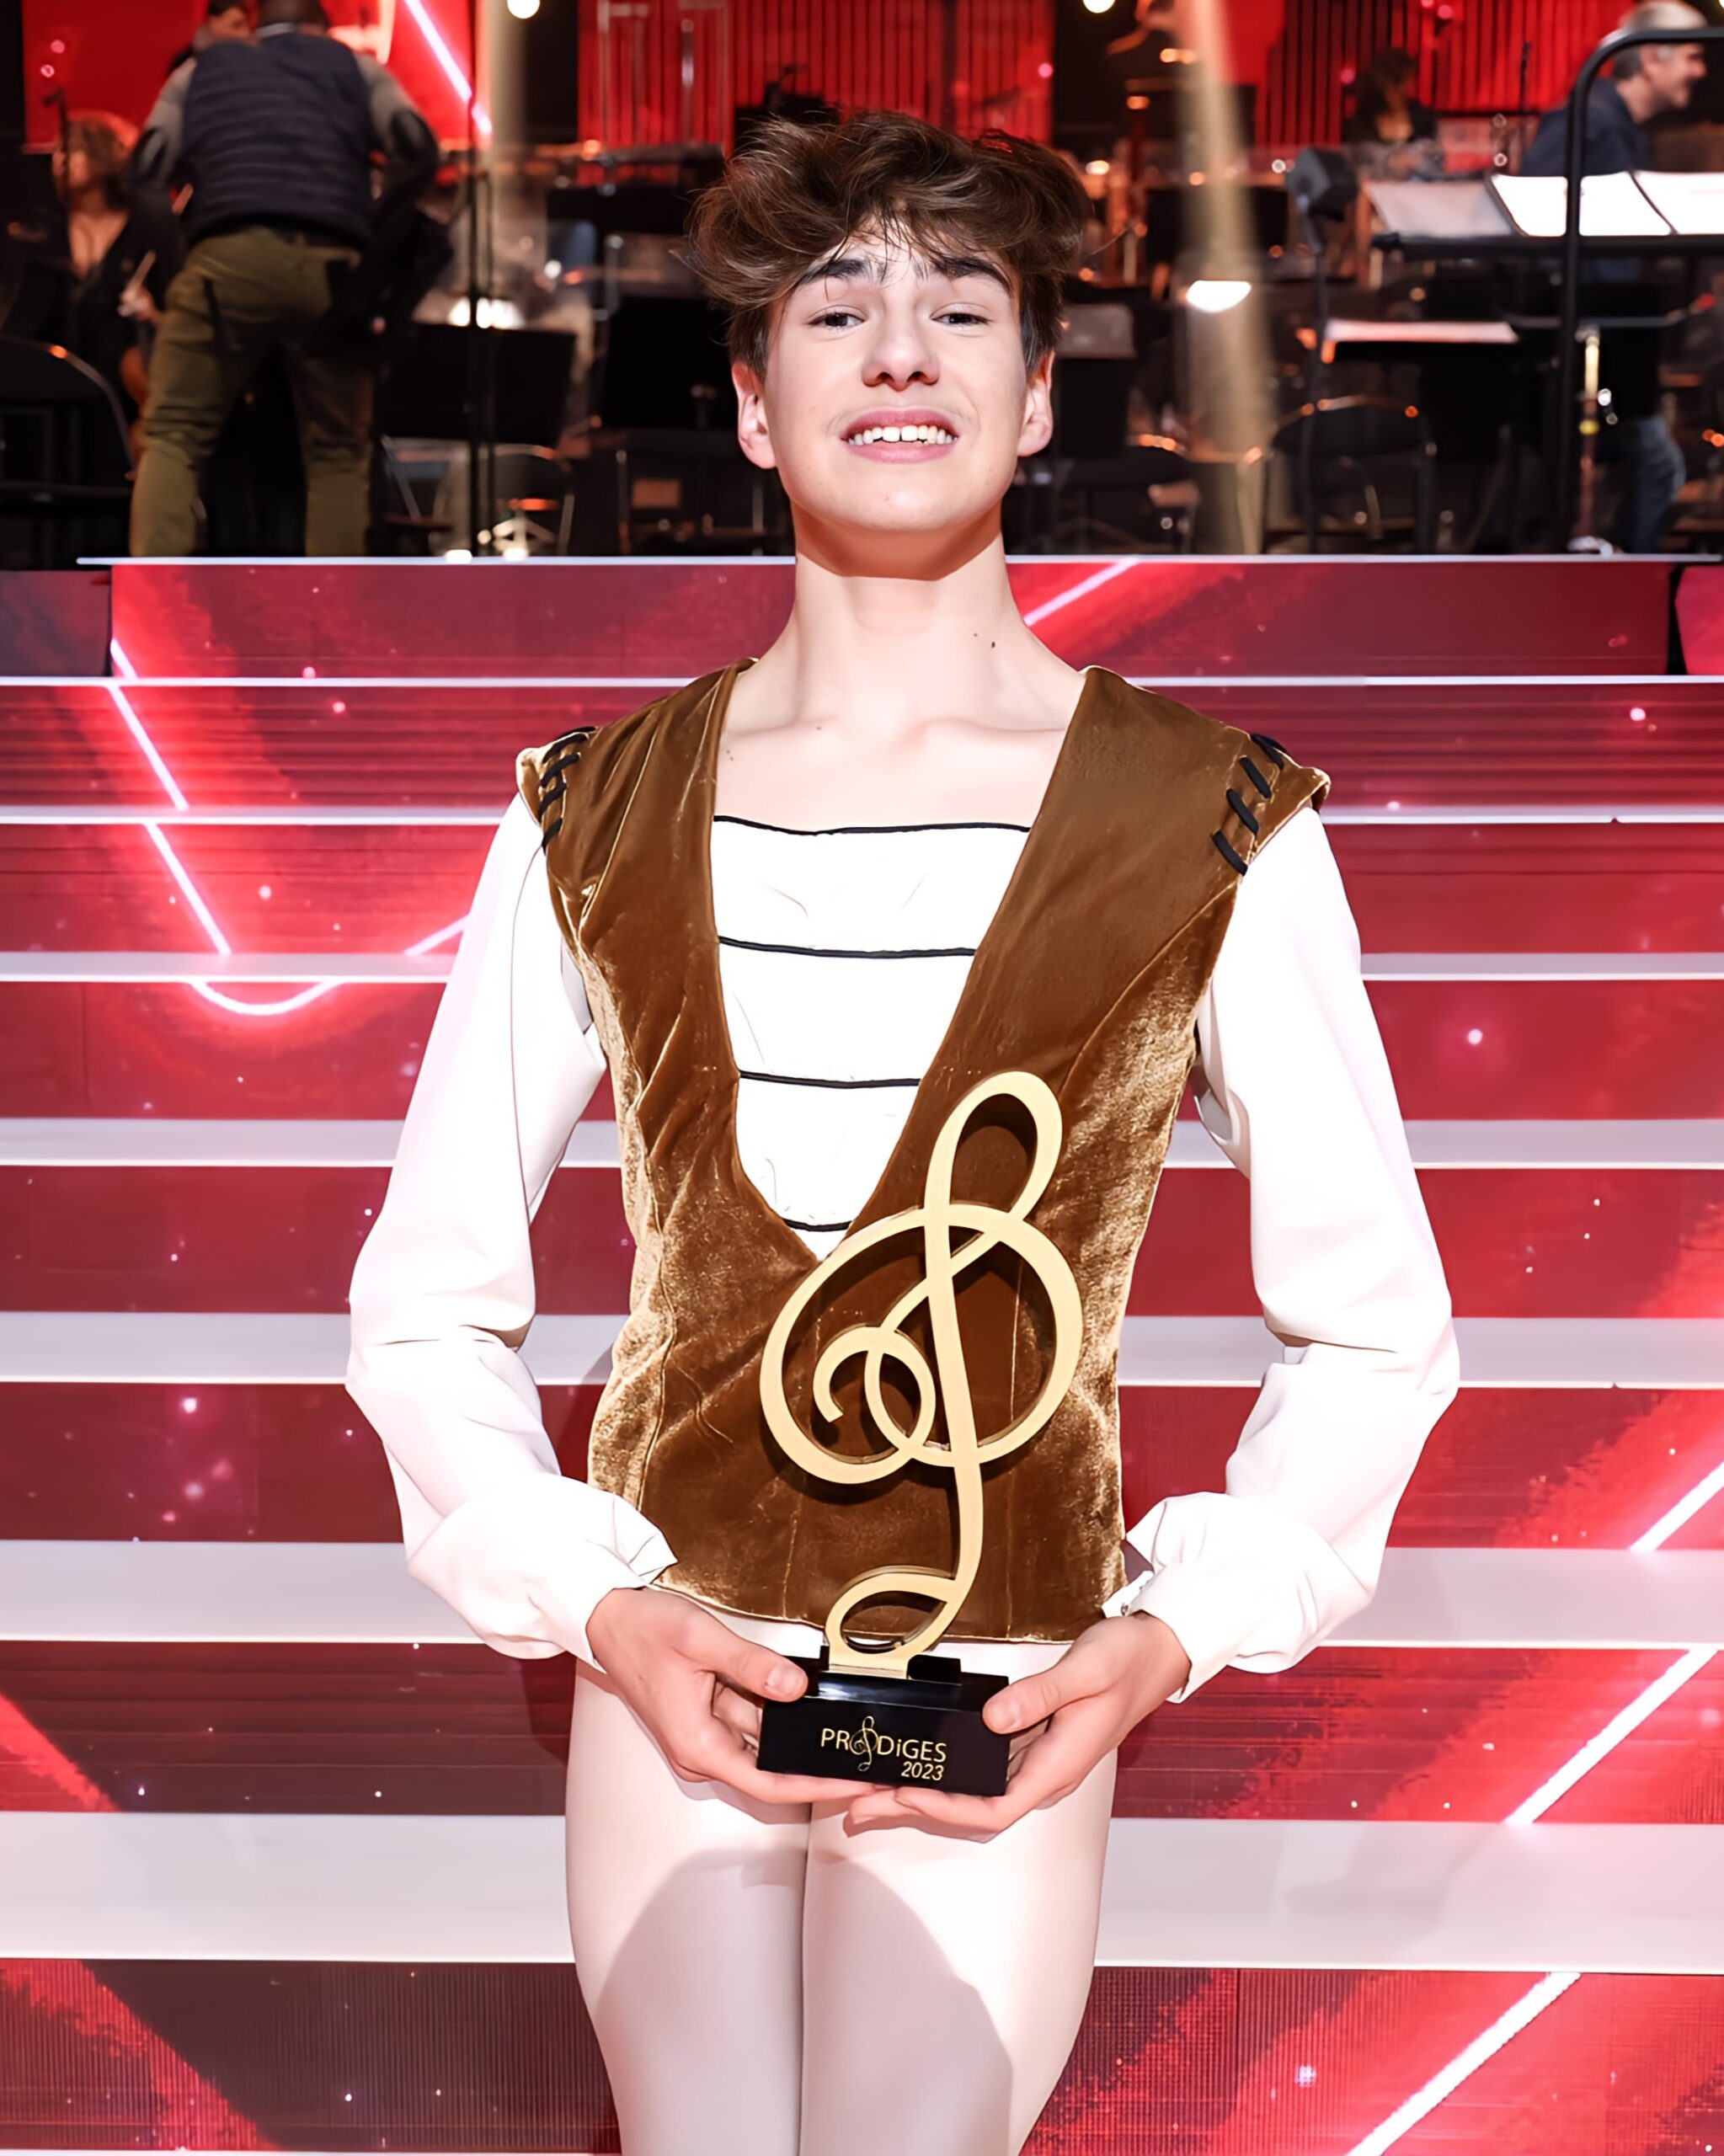 Prodiges : Le danseur Charlie (16 ans) remporte la victoire "Toutes catégories". - charlie prodiges 2 scaled